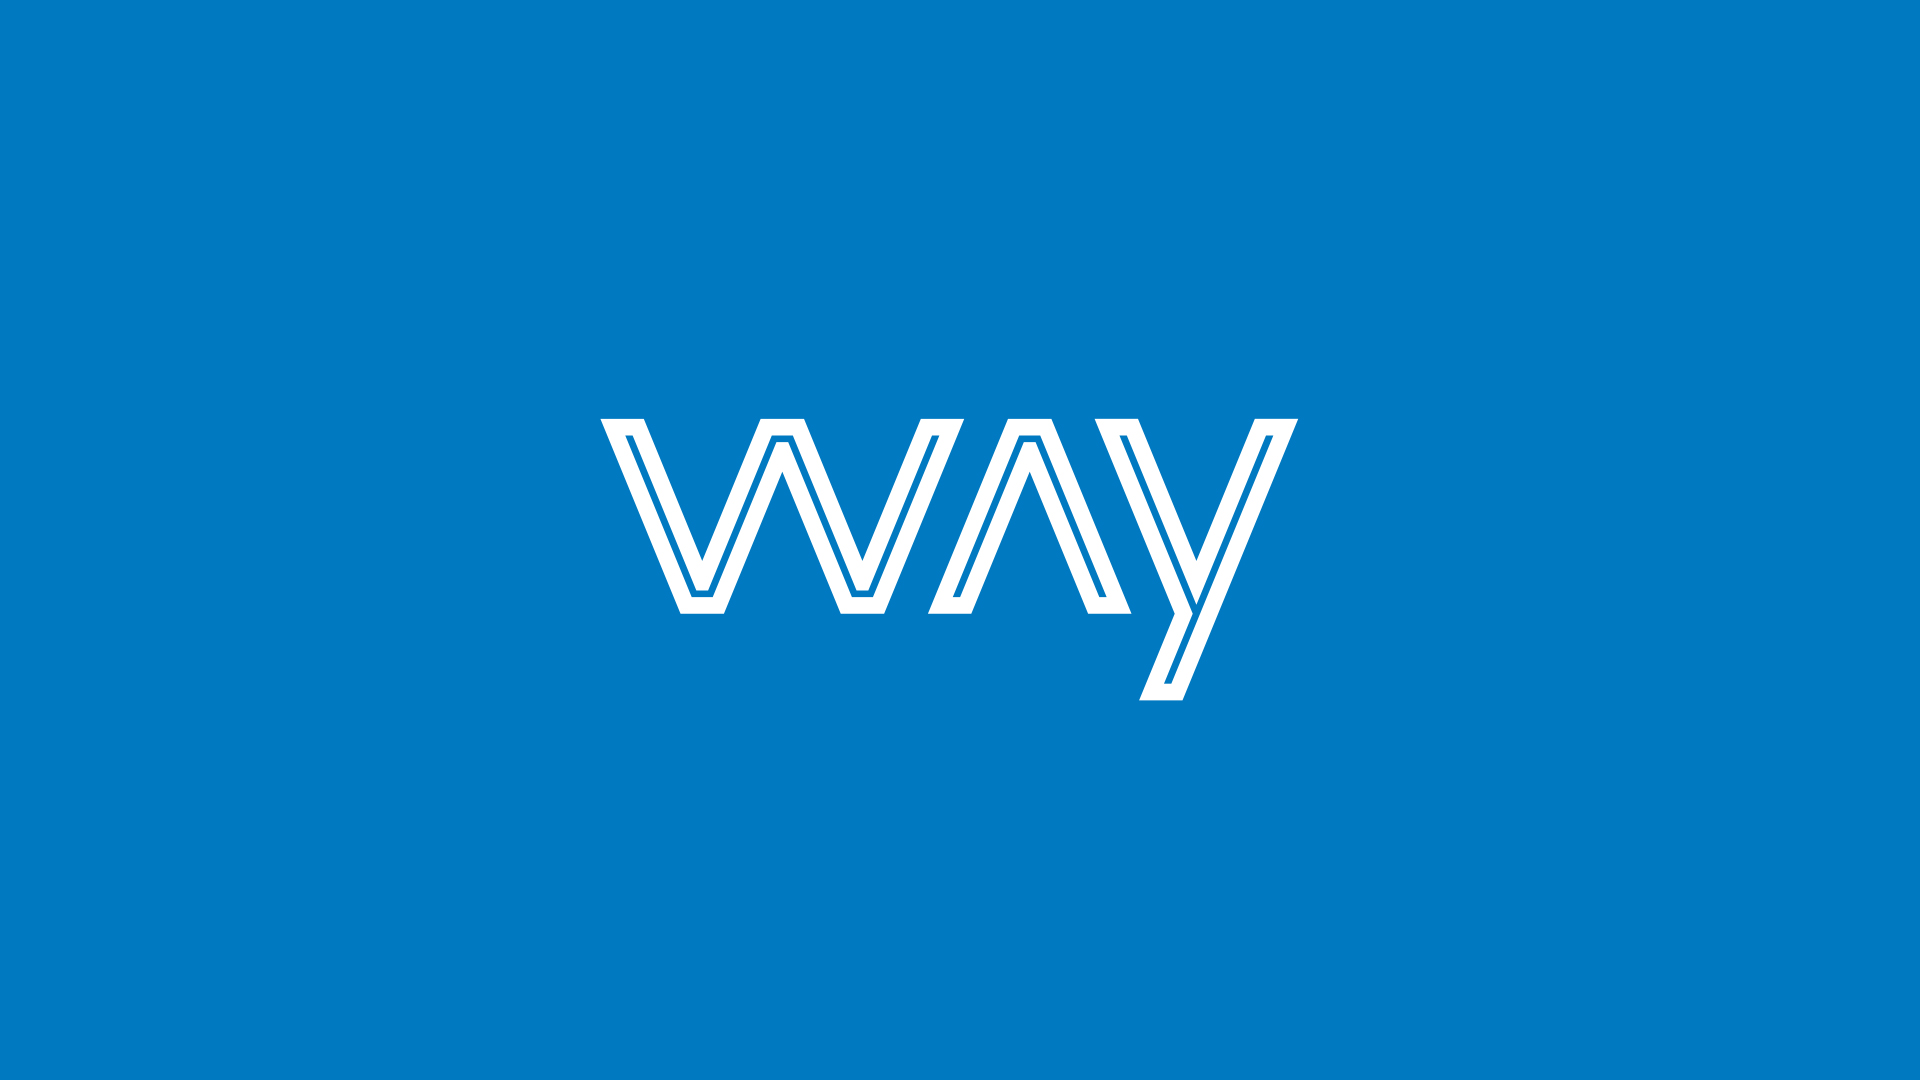 WAY Logo